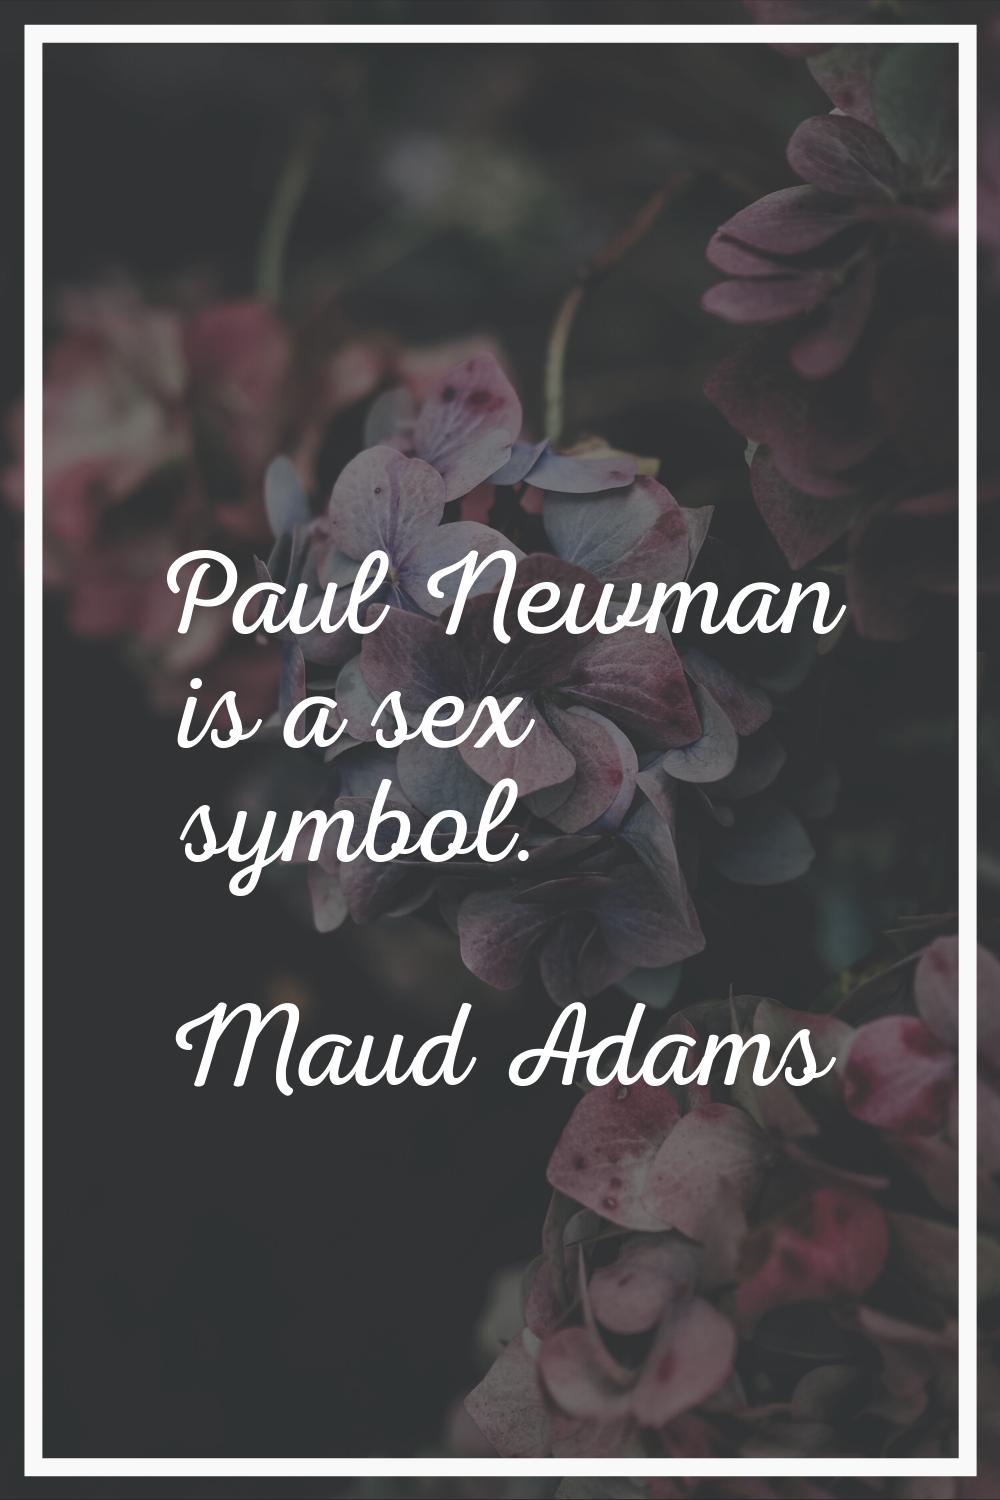 Paul Newman is a sex symbol.